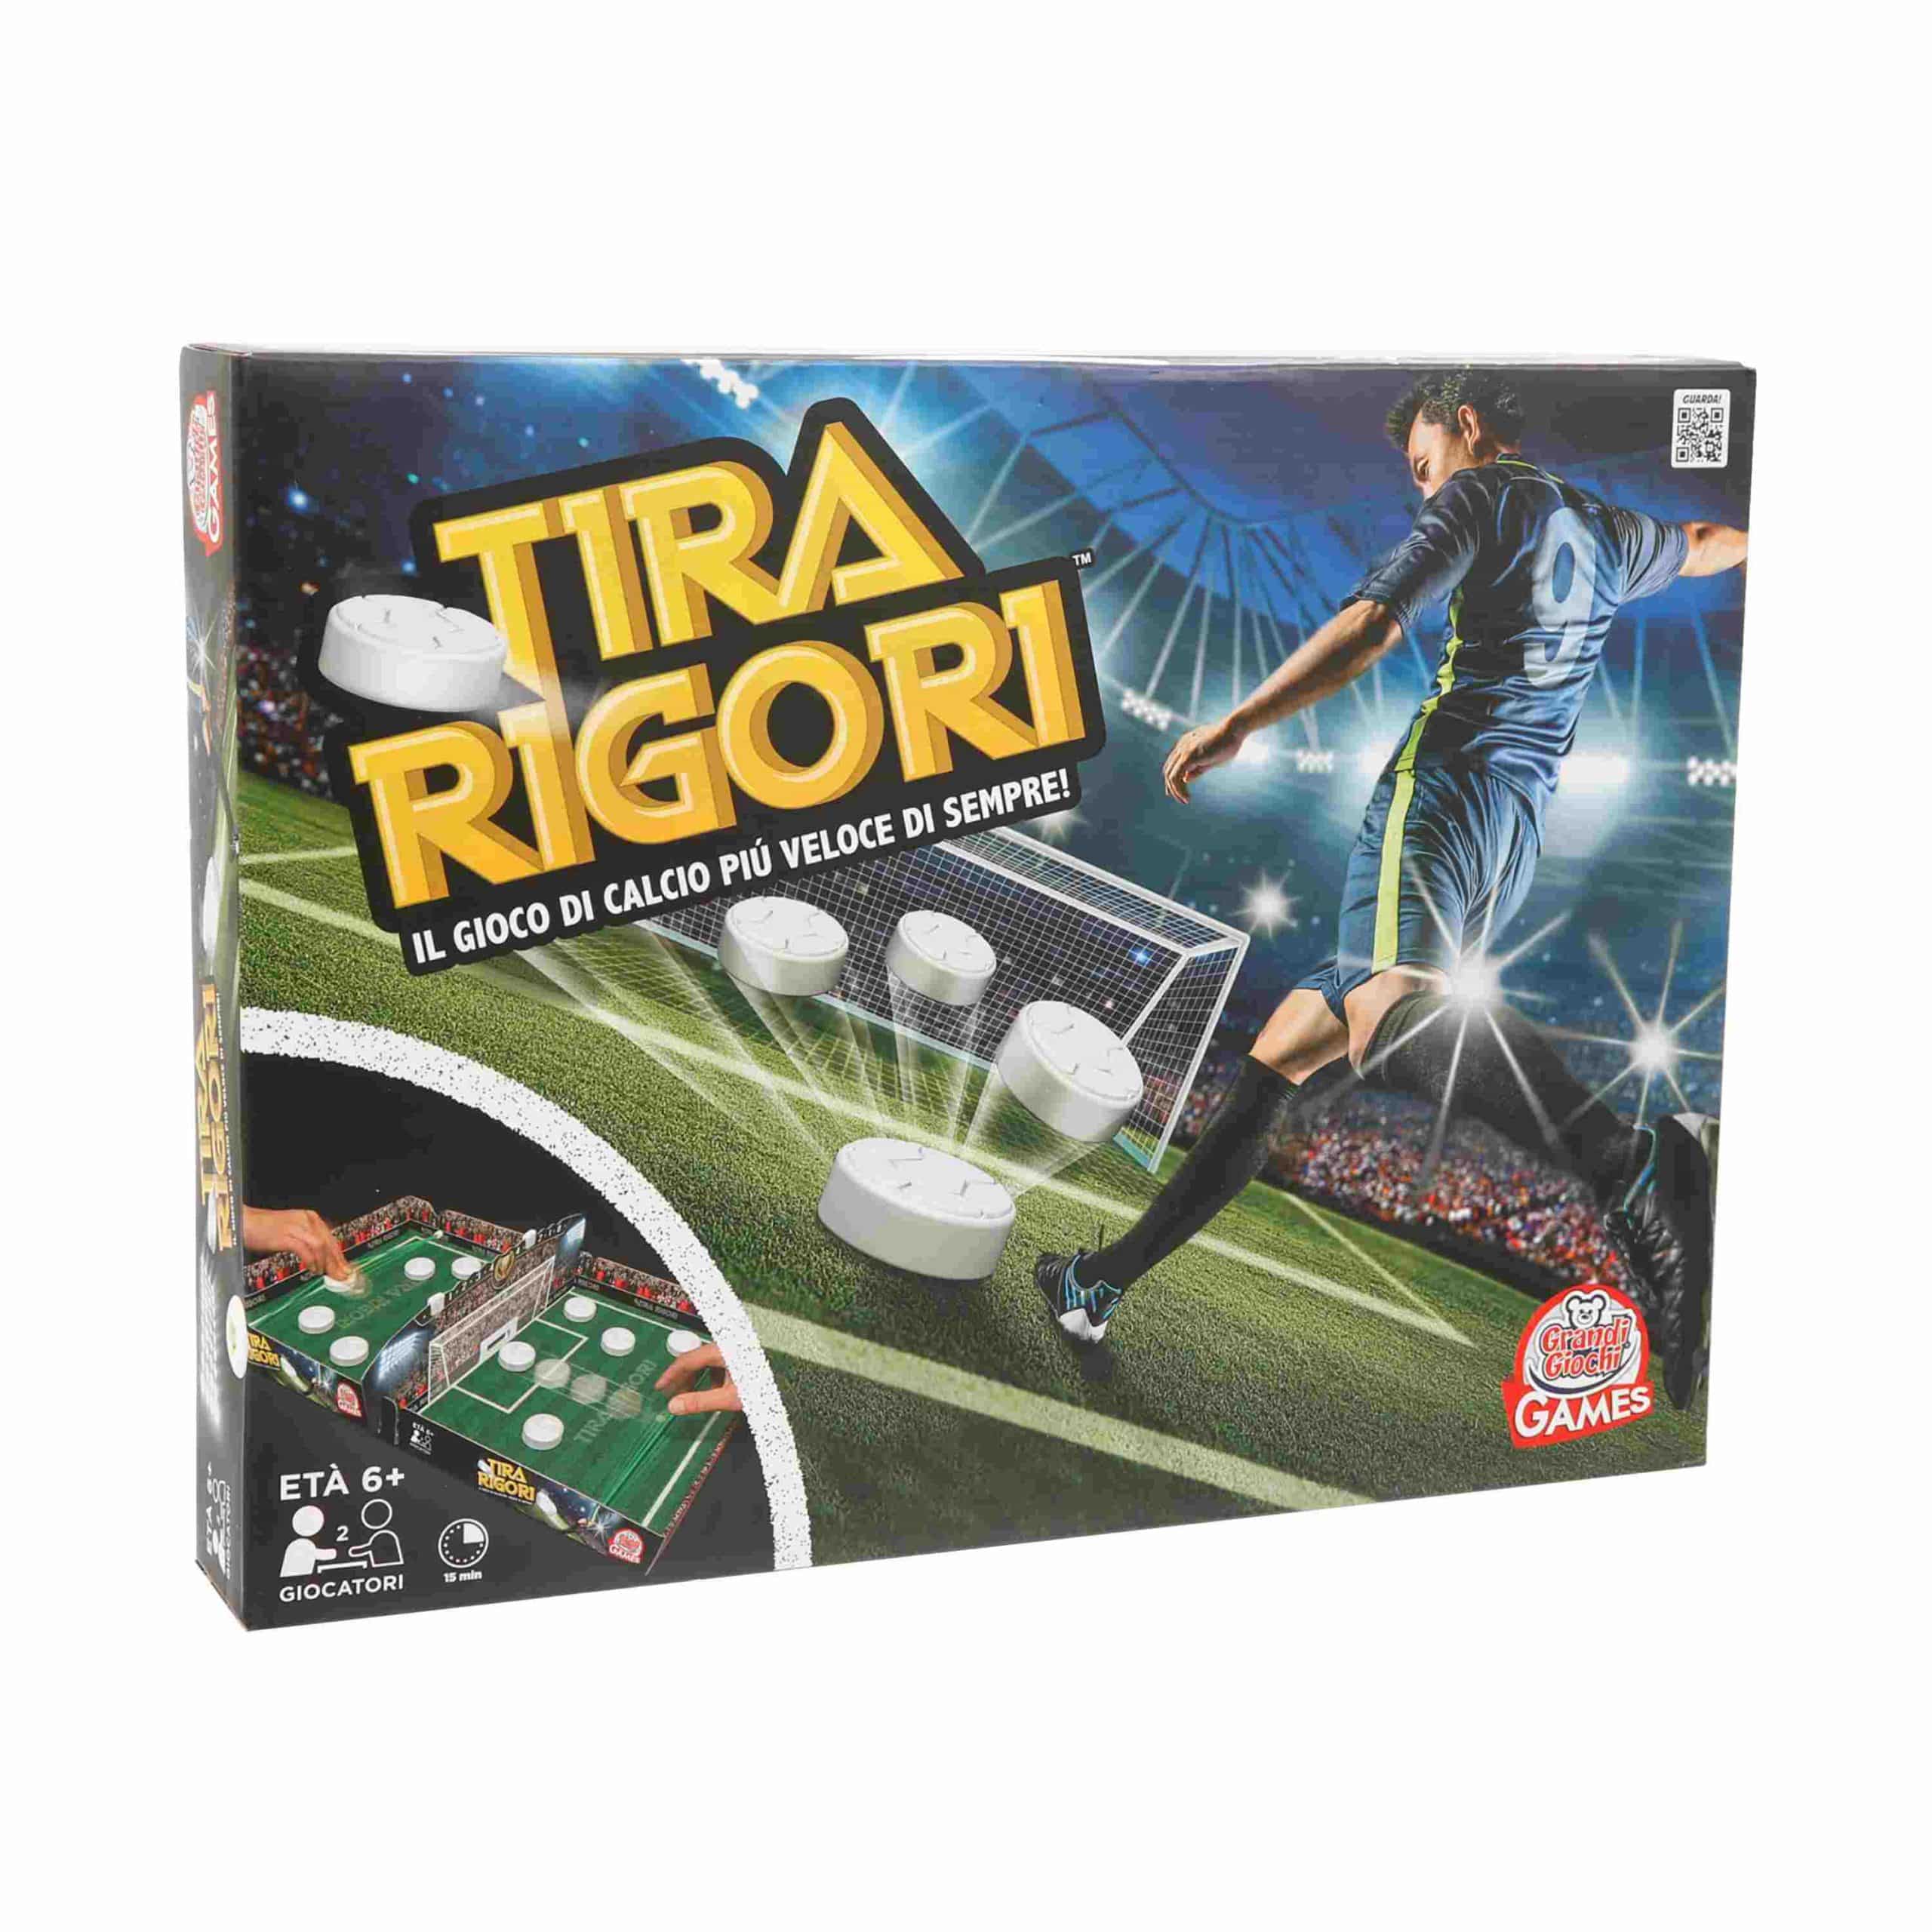 Tira Rigori Grandi Giochi PEA00101-0